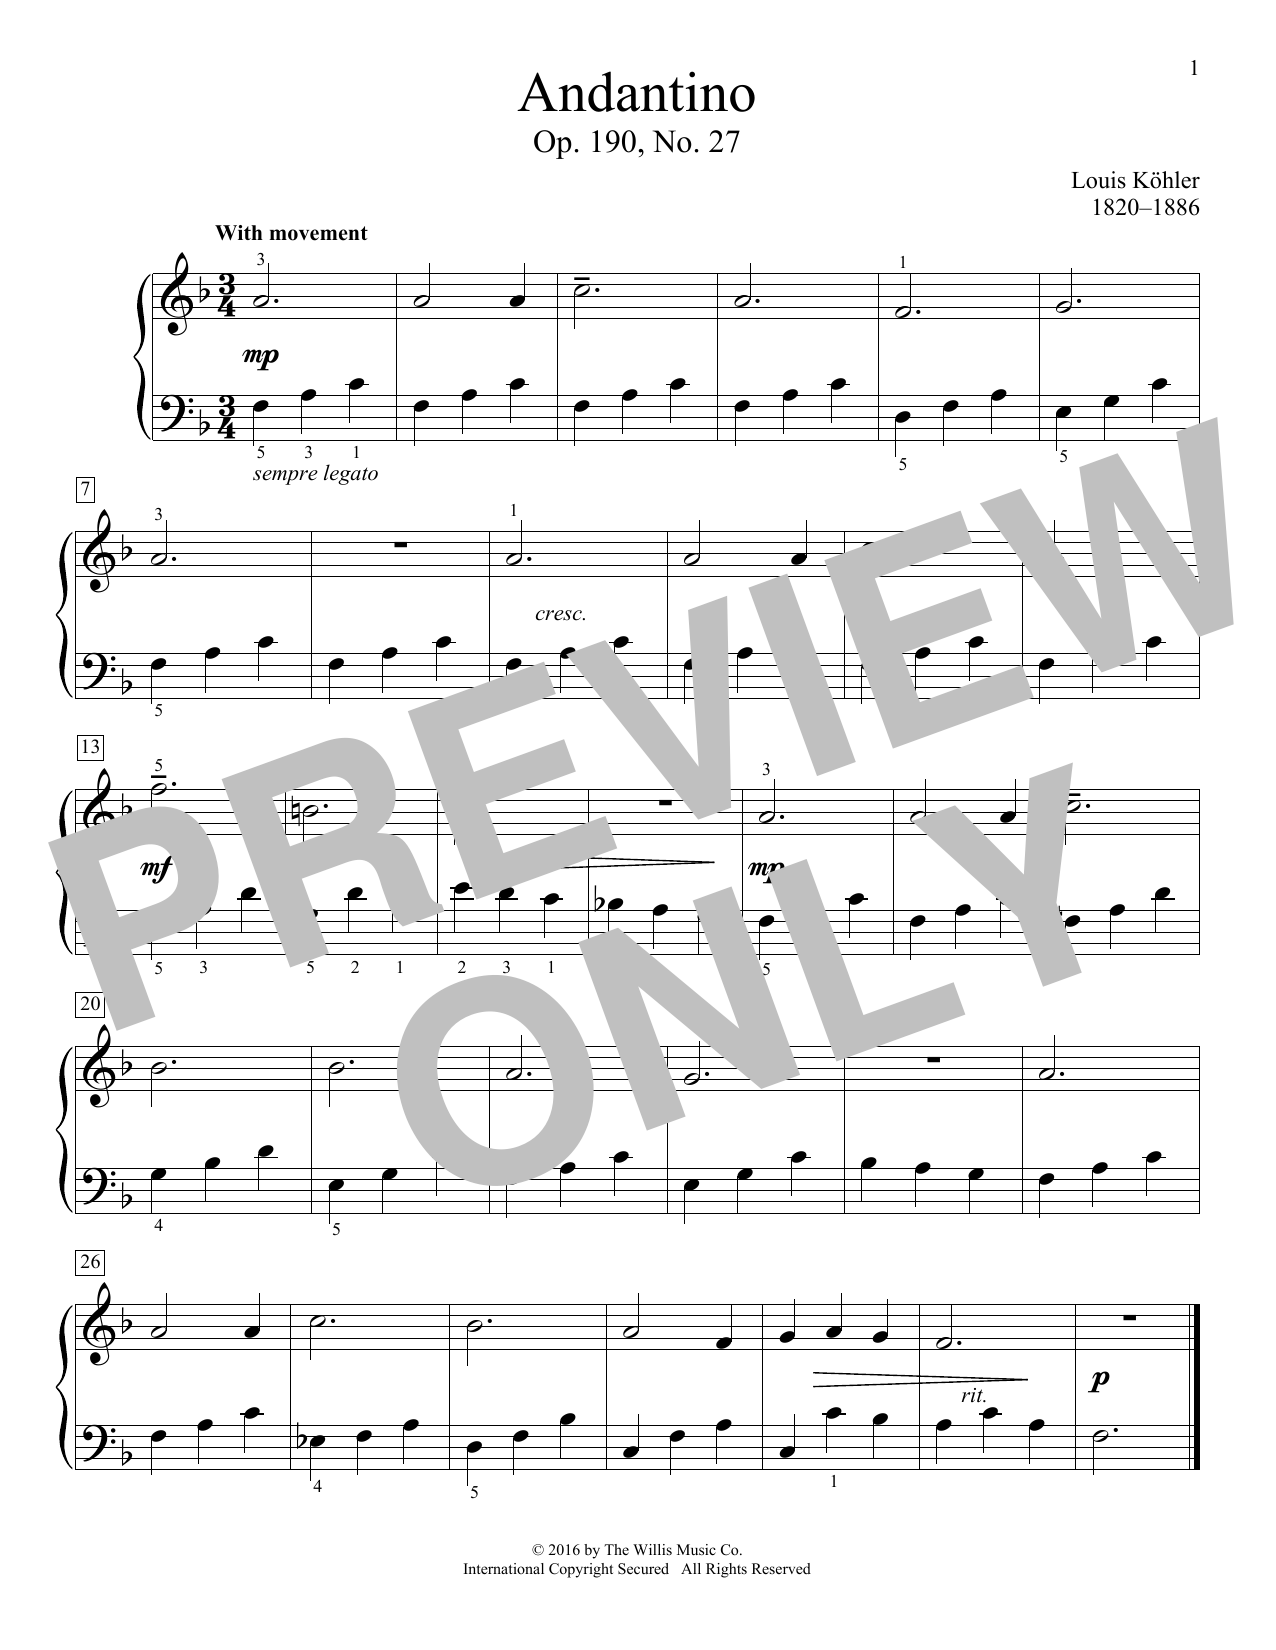 Download Louis Kohler Andantino, Op. 190, No. 27 Sheet Music